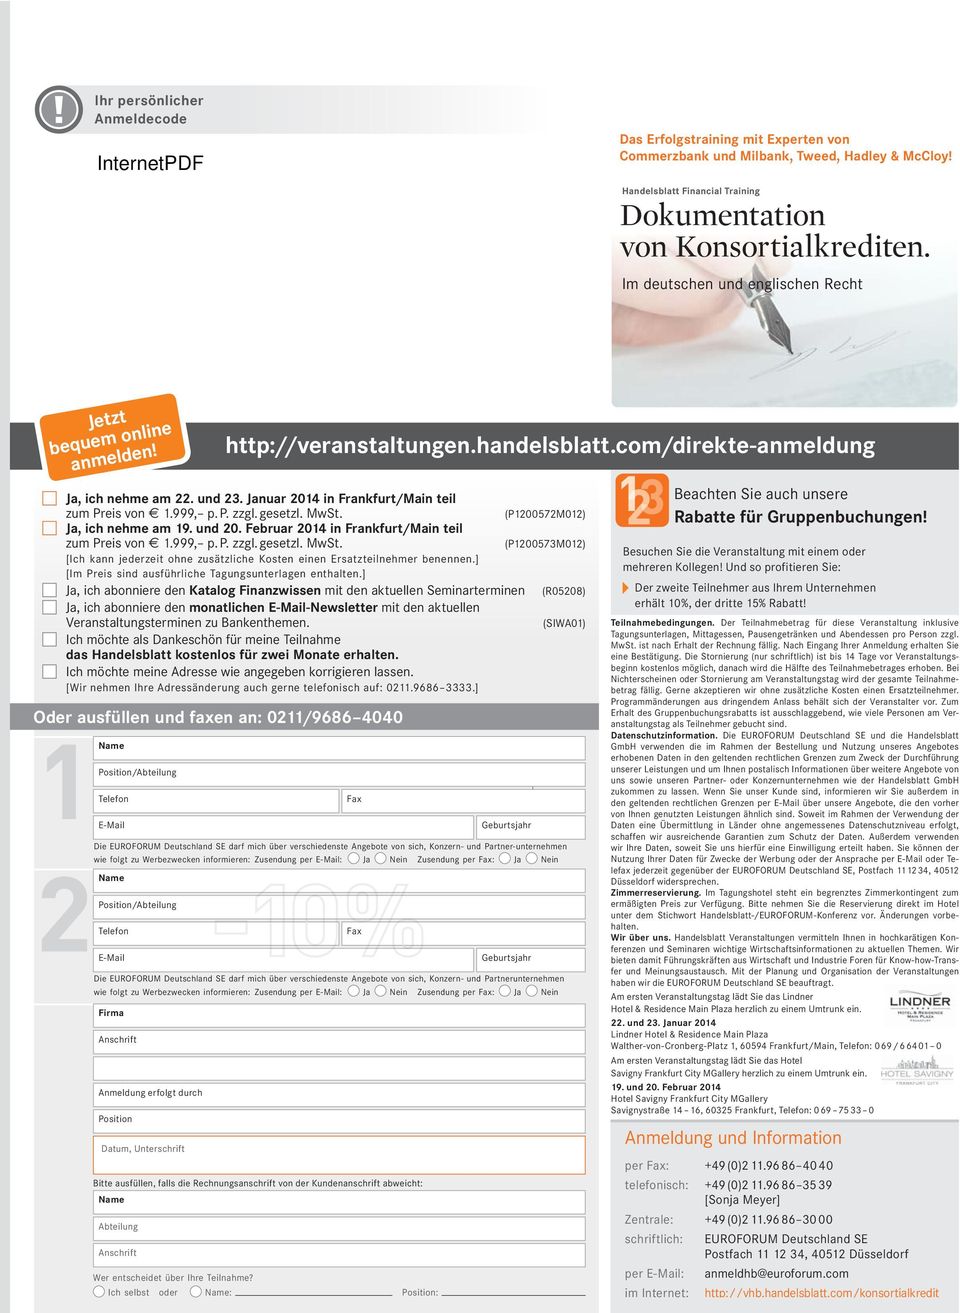 (P1200572M012) Ja, ich nehme am 19. und 20. Februar 2014 in Frankfurt/Main teil zum Preis von 1.999, p. P. zzgl. gesetzl. MwSt.